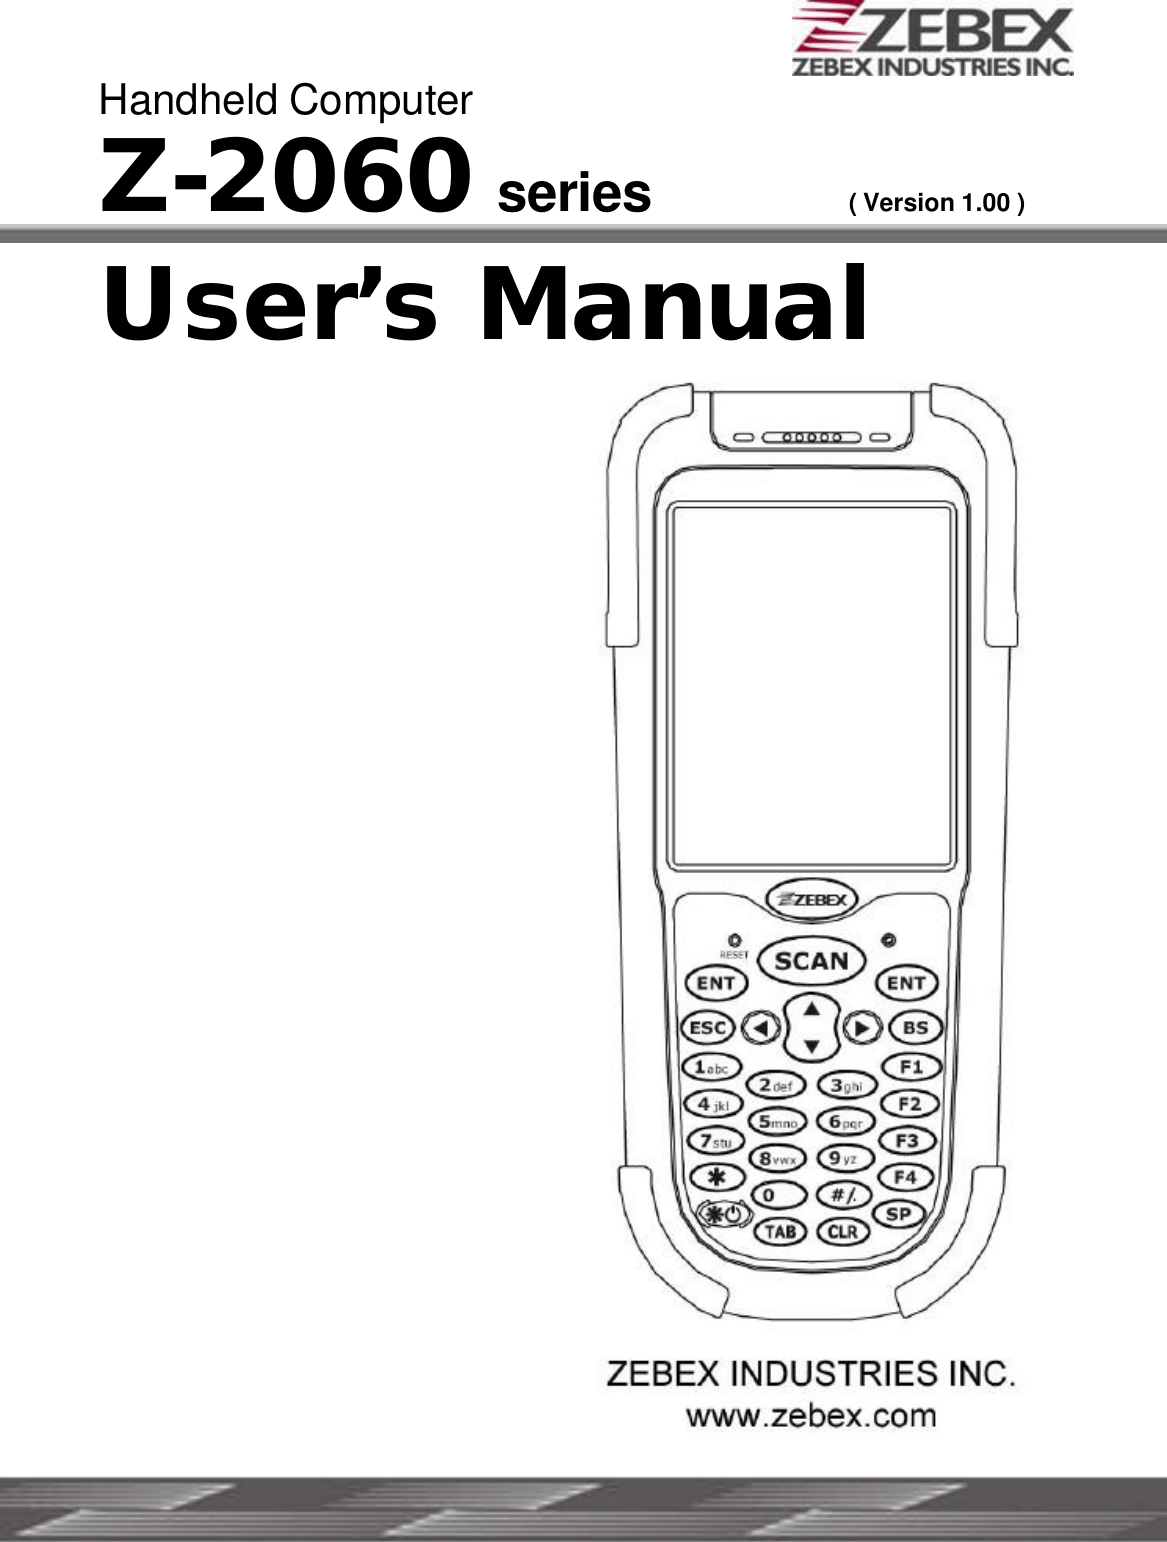     Handheld Computer Z-2060 series ( Version 1.00 )  User’s Manual                  ZEBEX INDUSTRIES INC. WWW.ZEBEX.COM  